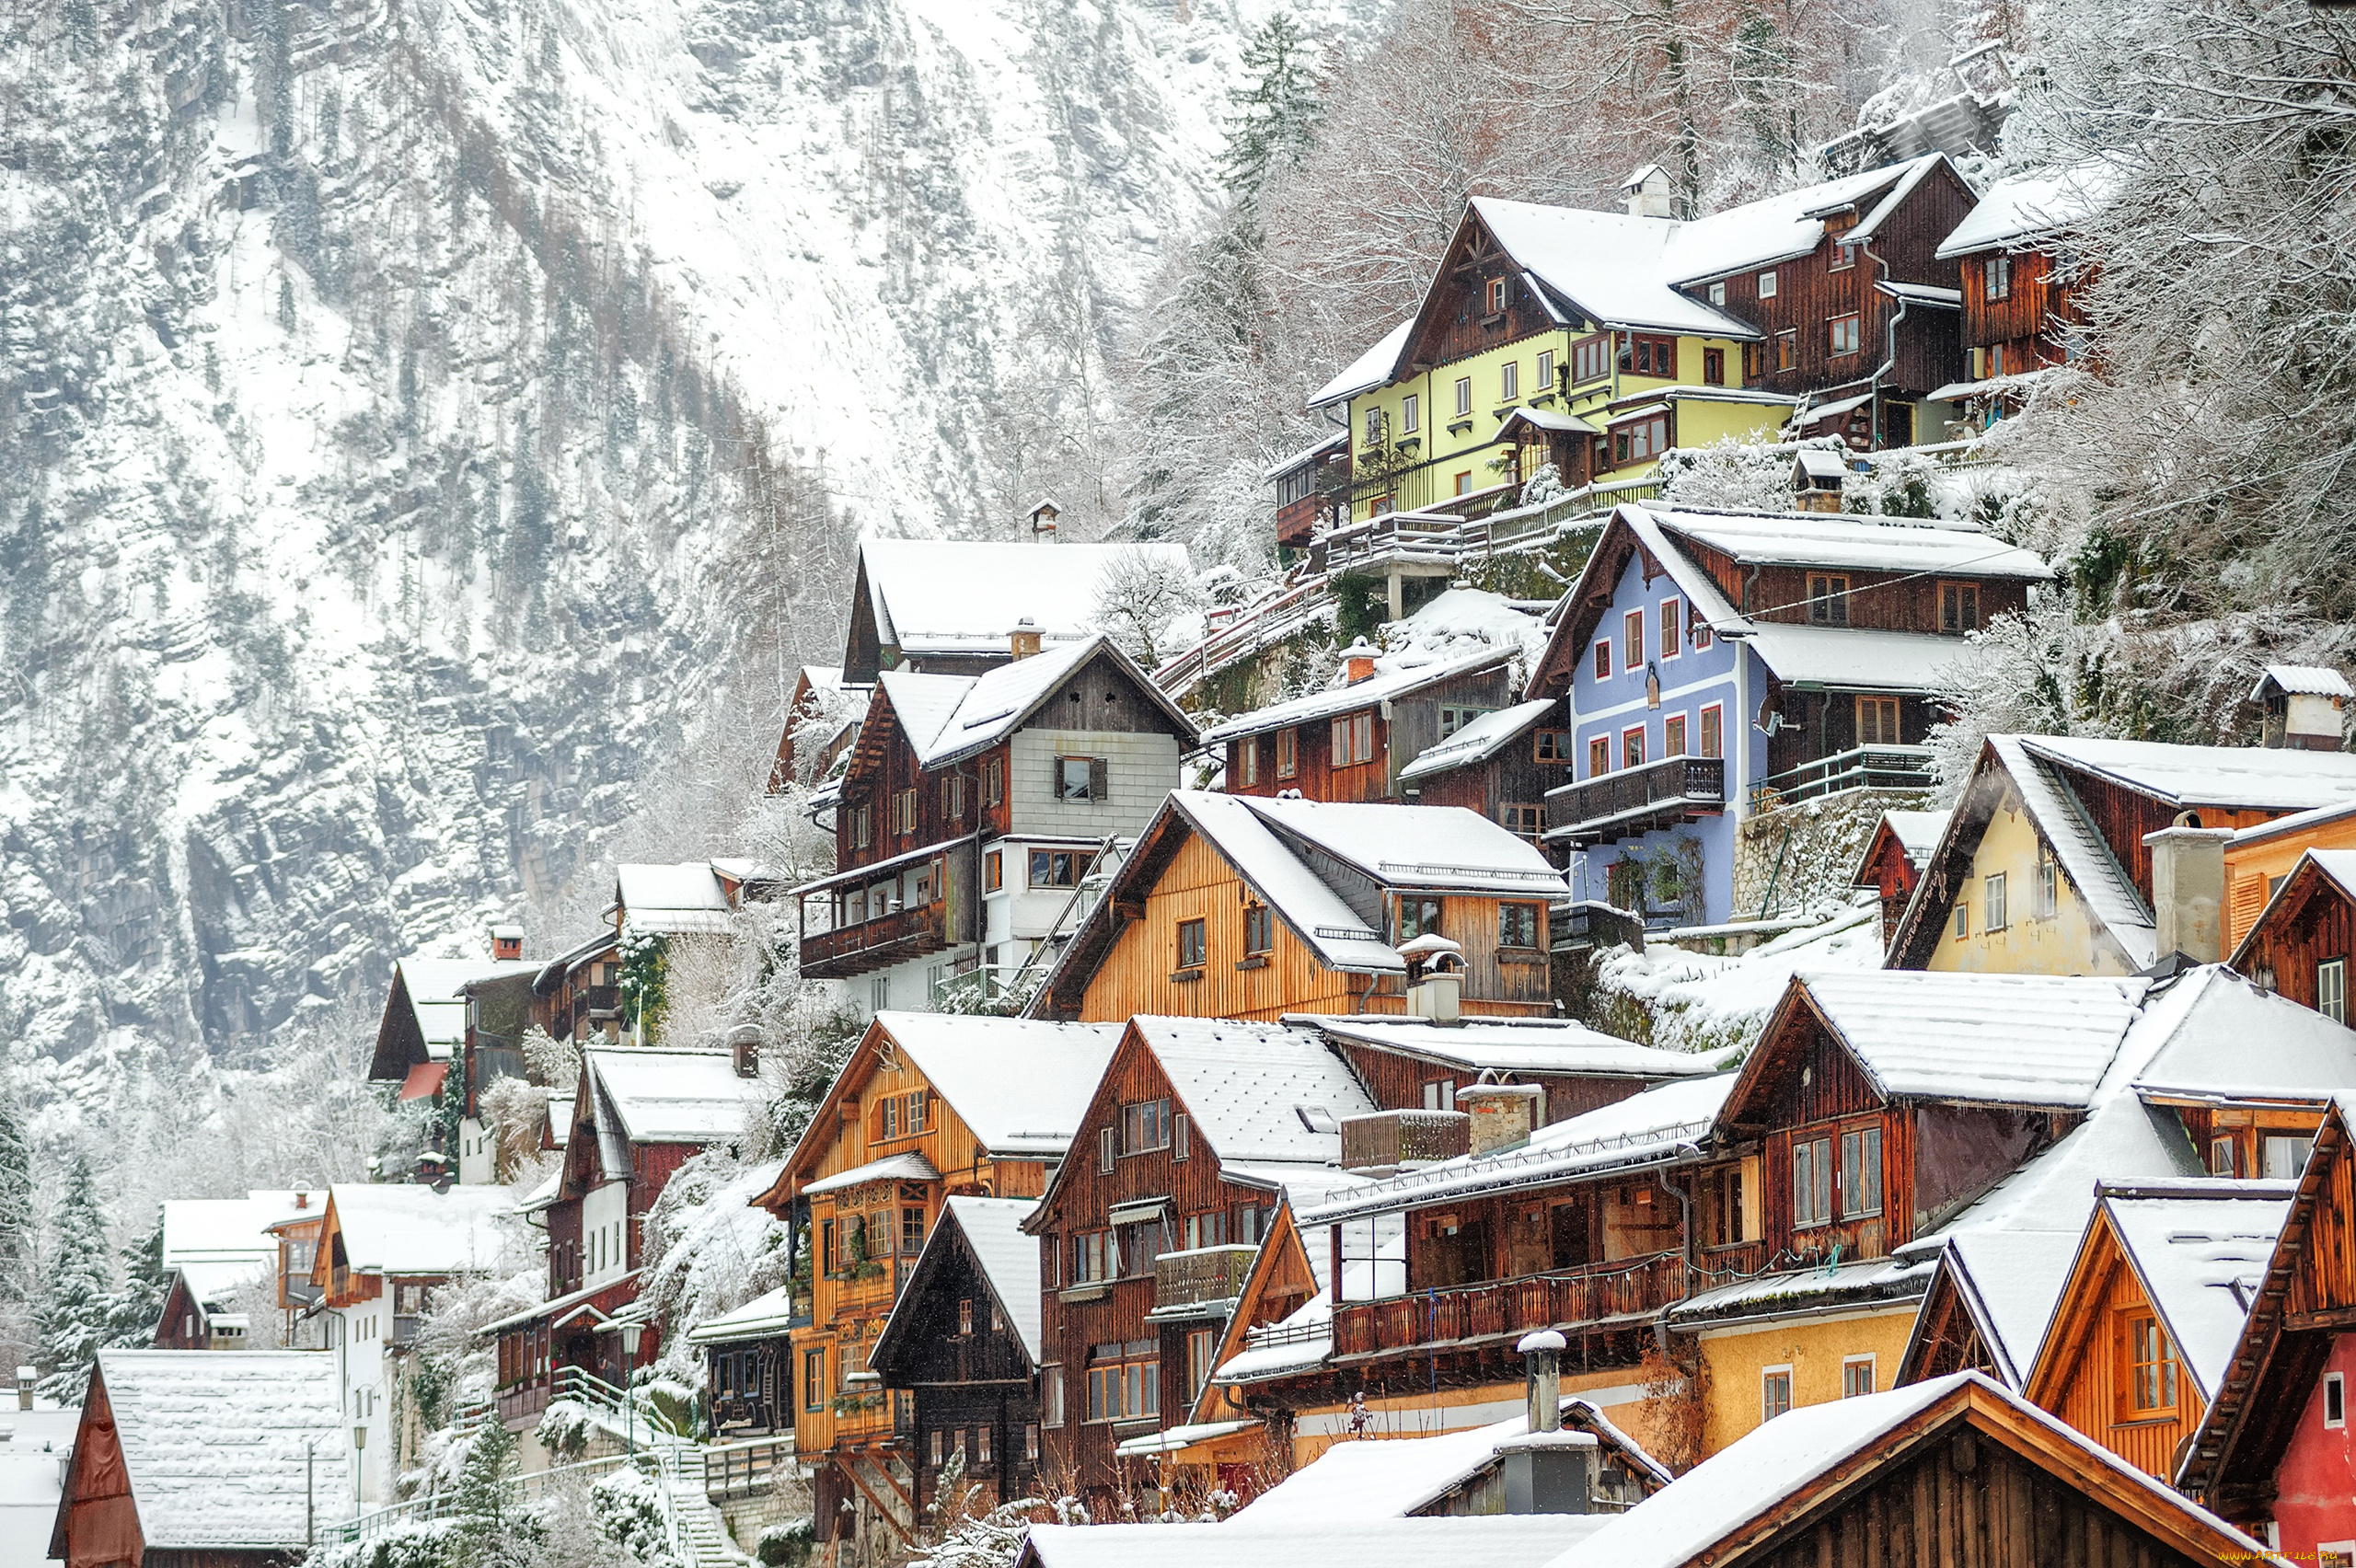 города, -, пейзажи, снег, зима, австрия, дома, hallstatt, деревья, скалы